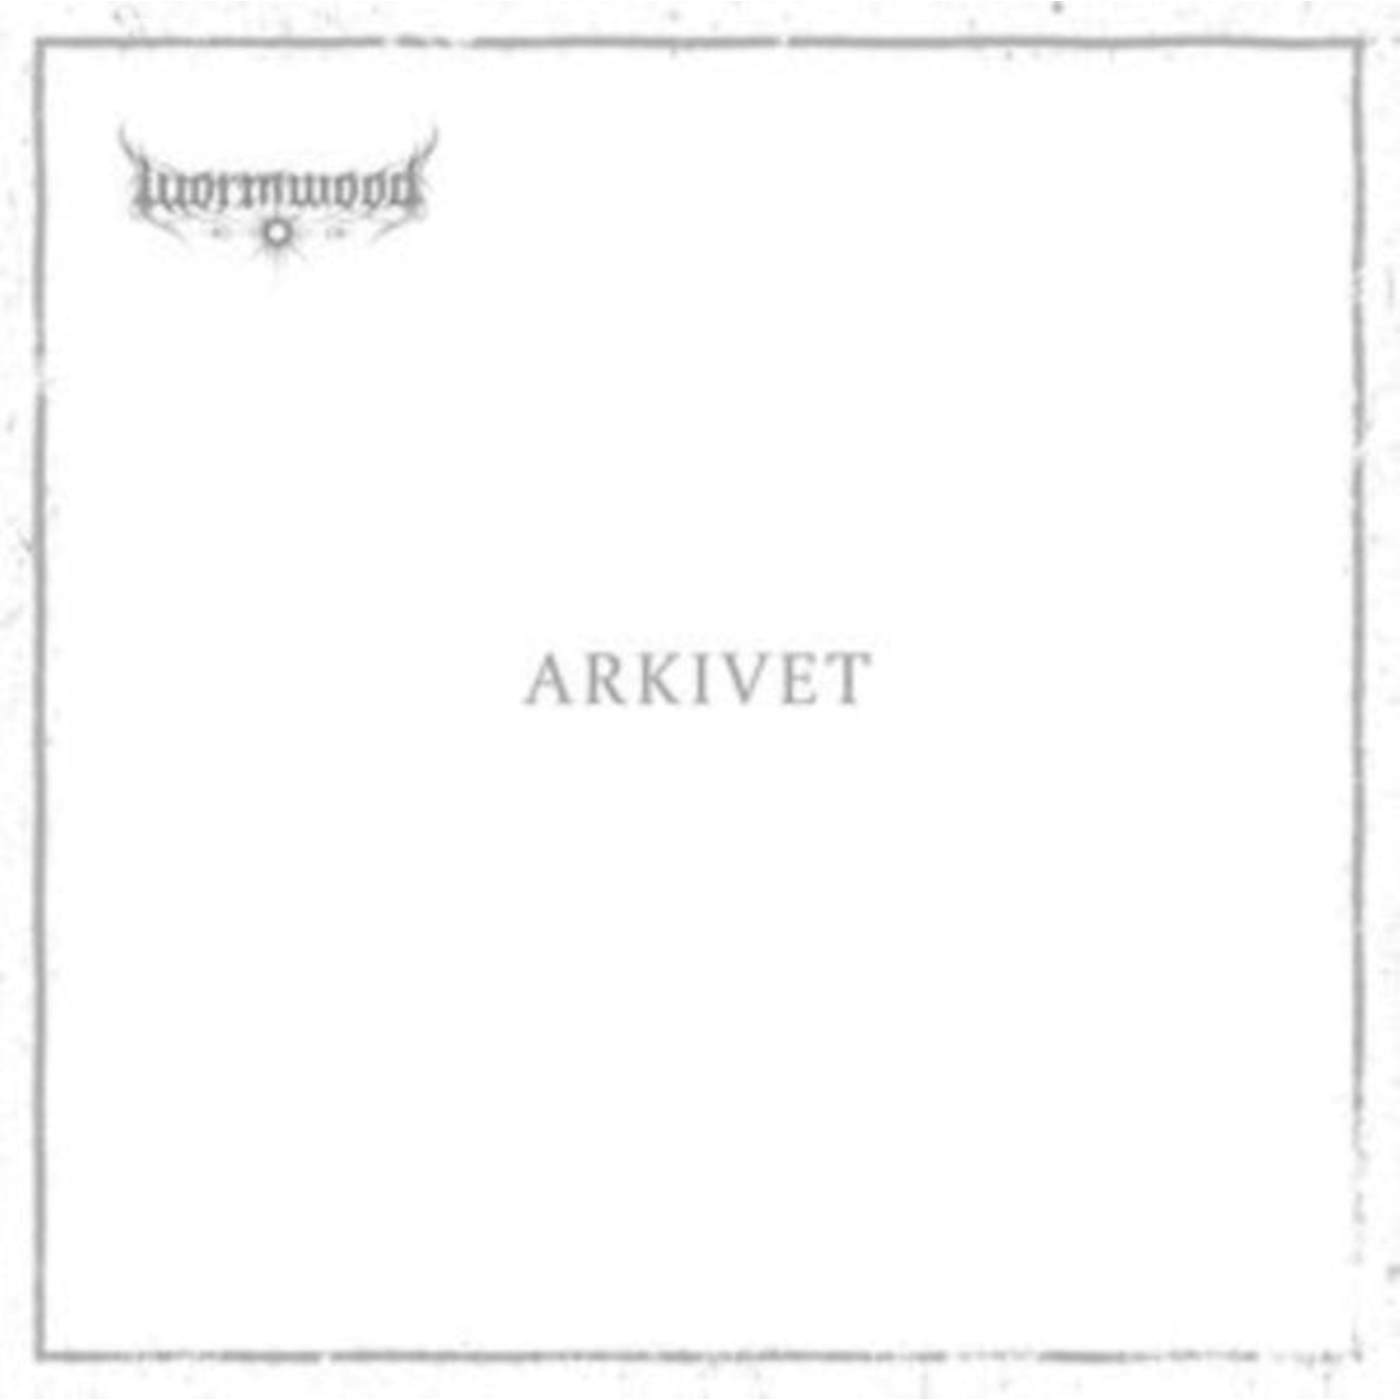 Wormwood LP - Arkivet (Embossed Cover, Etched D-Side + 32 Page Novel) (Vinyl)